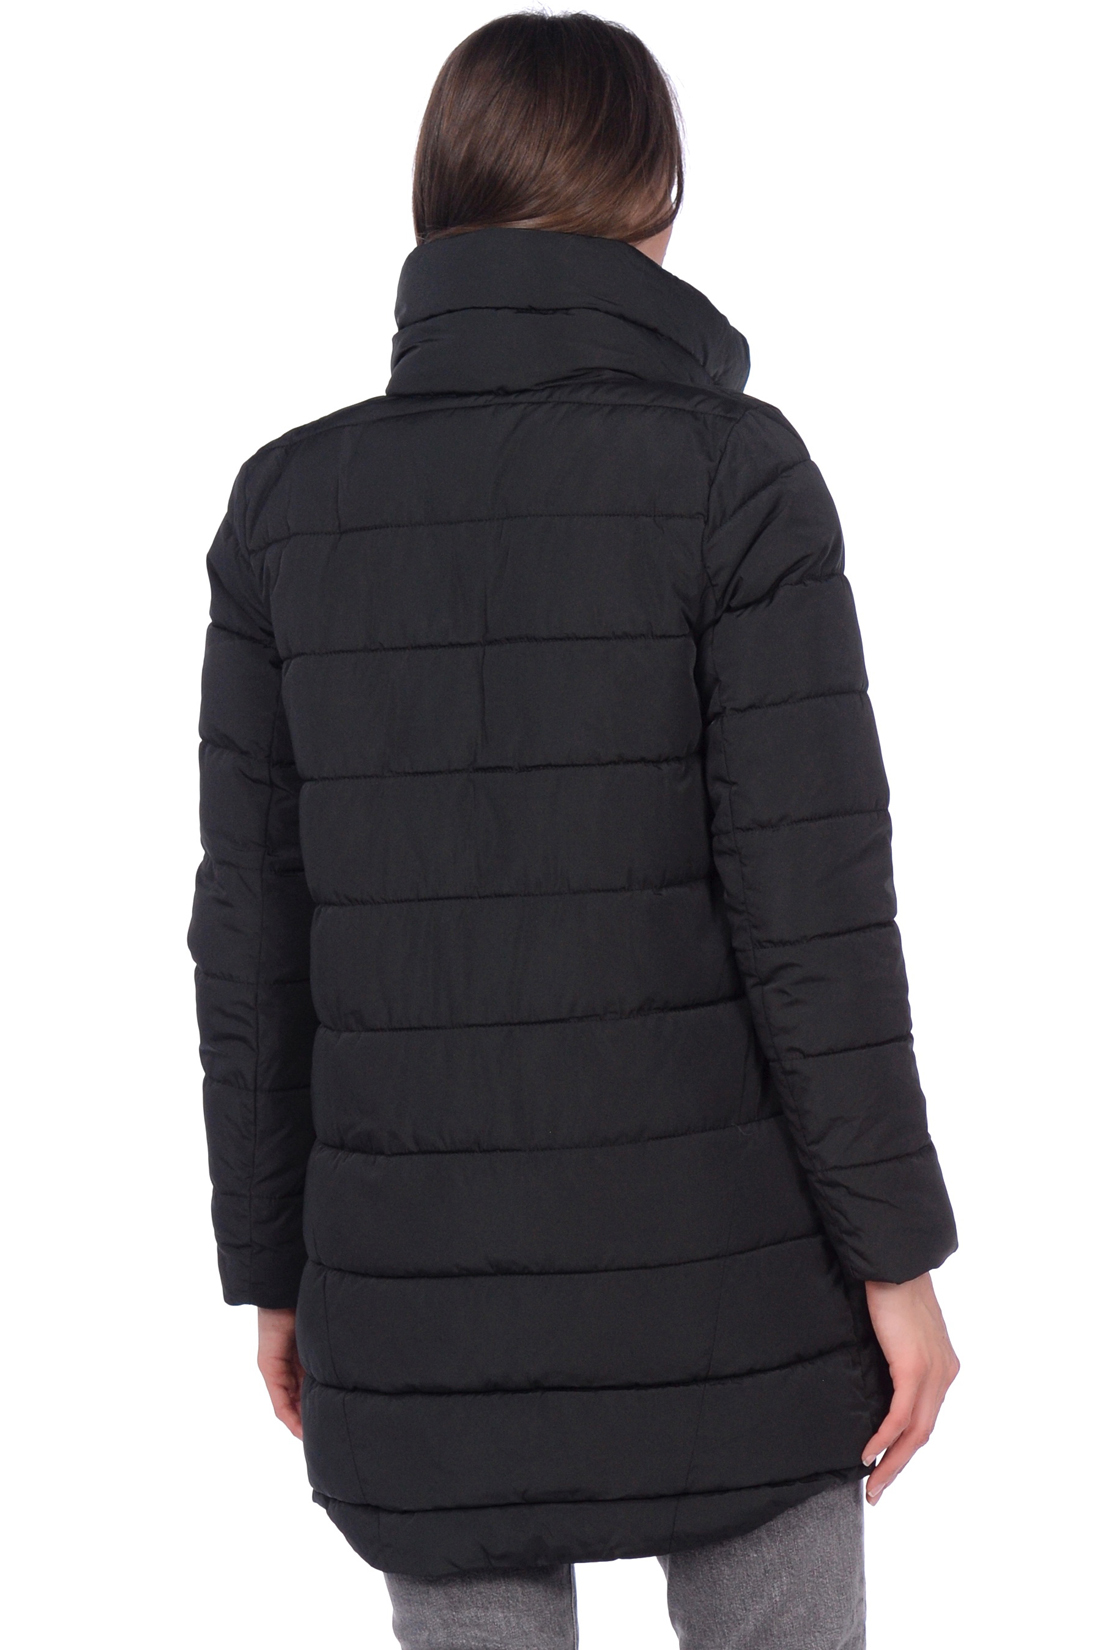 Чёрная куртка с удлинённой спинкой (арт. baon B039563), размер XXL, цвет черный Чёрная куртка с удлинённой спинкой (арт. baon B039563) - фото 2